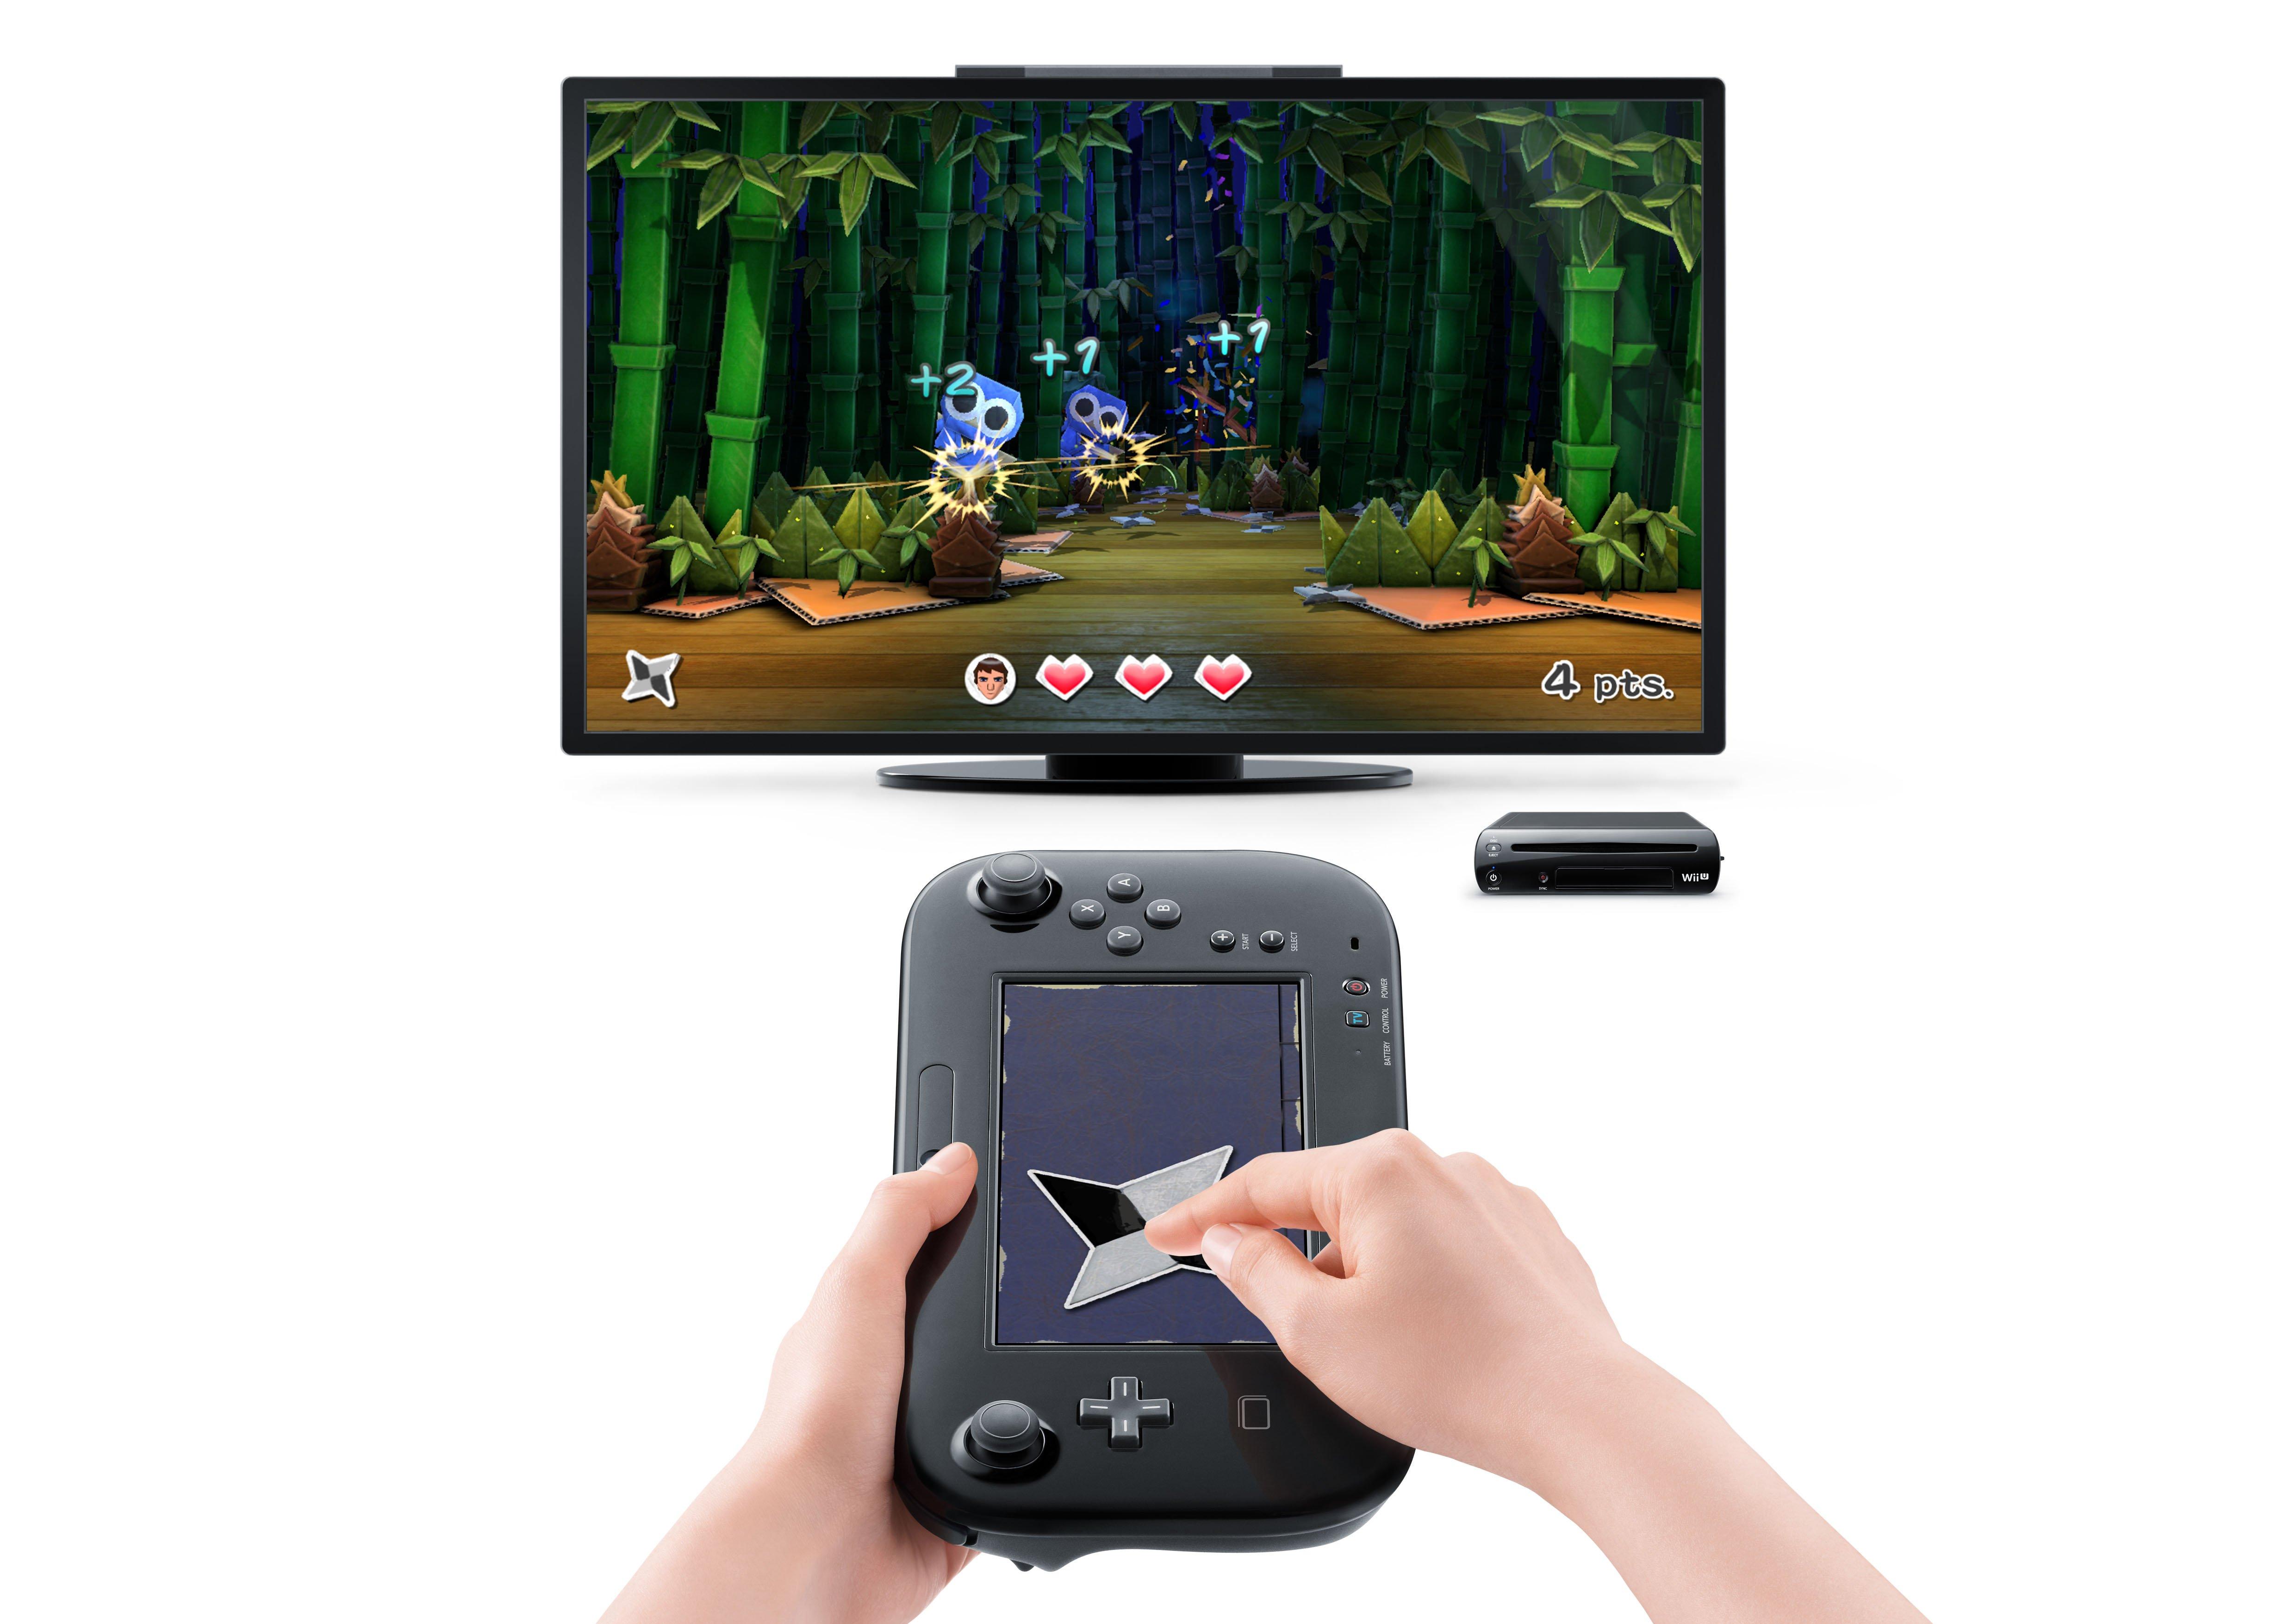 Nintendo Land - Nintendo Wii U – Retro Raven Games